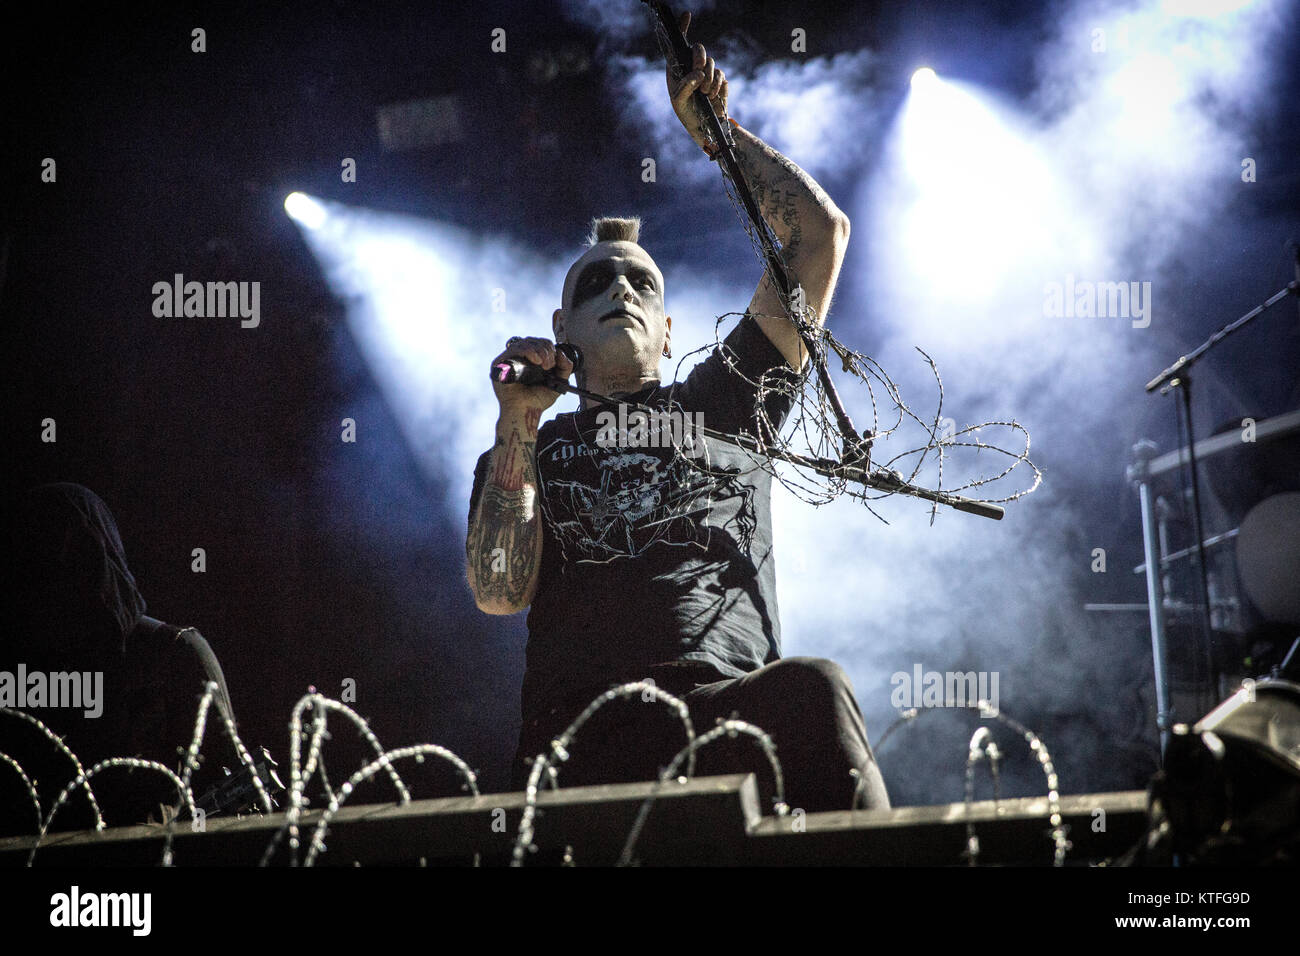 Il Norvegese black metal band Mayhem esegue un concerto dal vivo al Sweden Rock Festival 2016. Qui la cantante Attila Csihar è visto dal vivo sul palco. La Svezia, 09/06 2016. Foto Stock